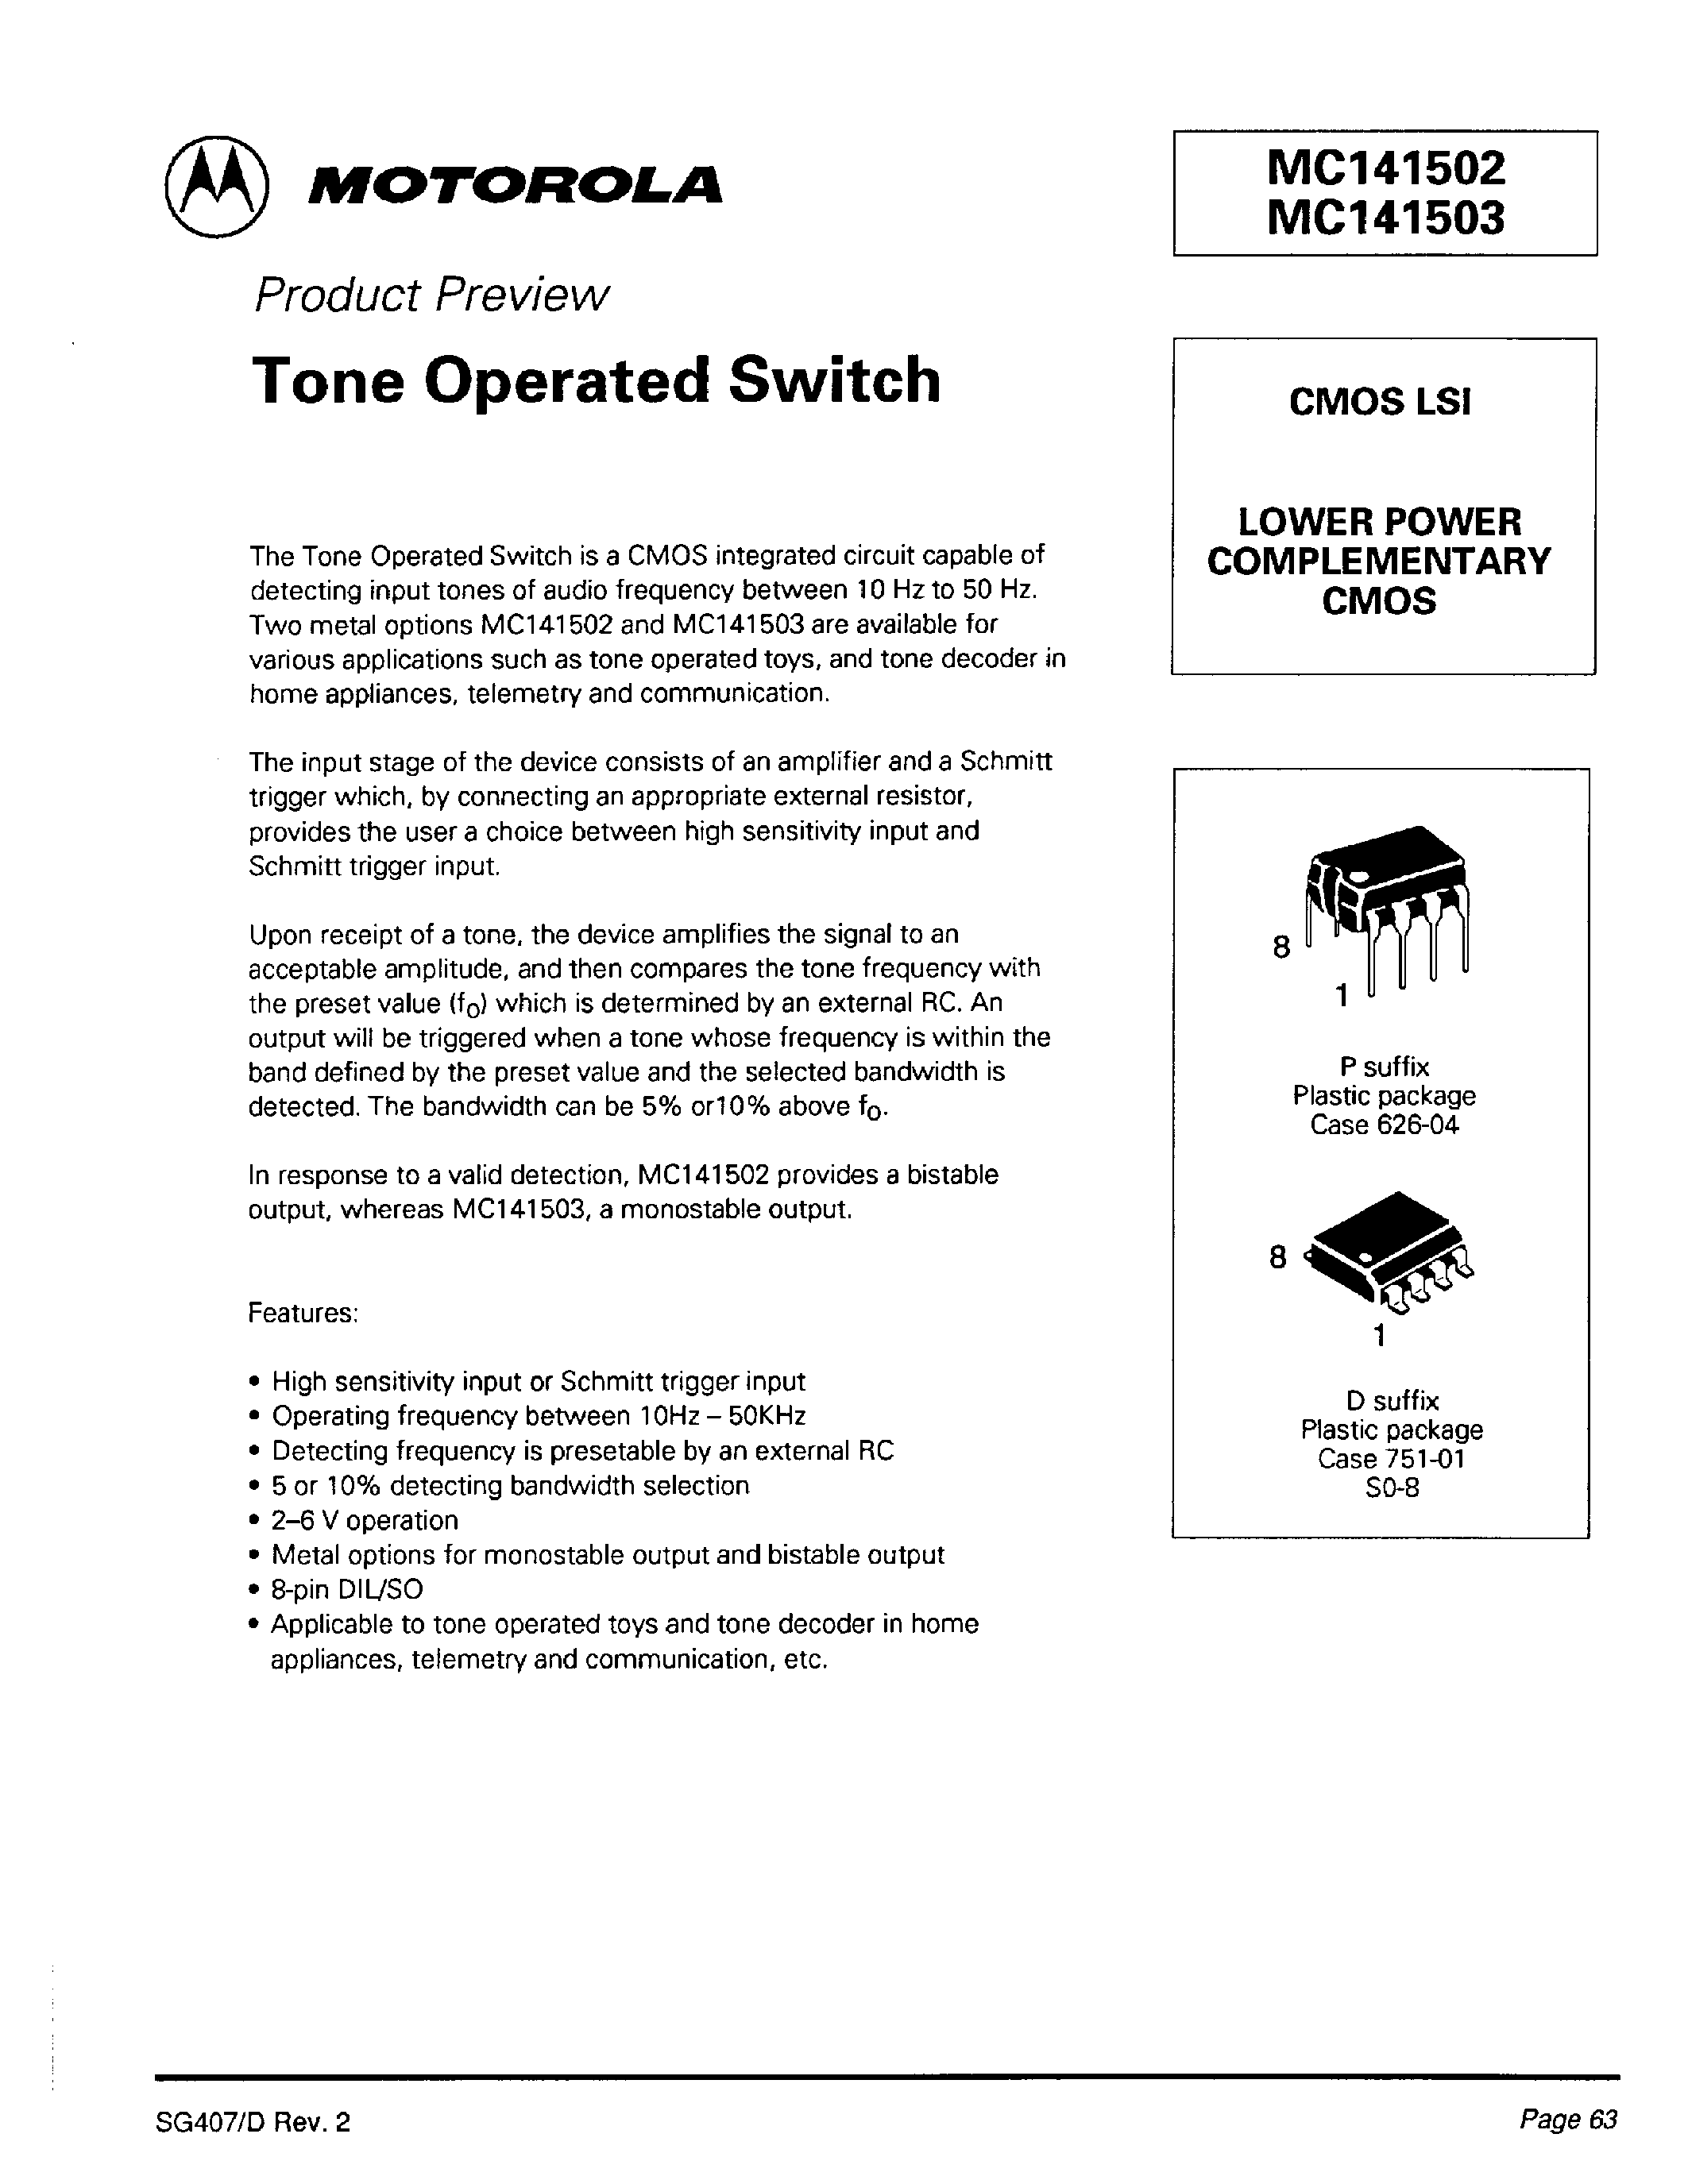 Даташит MC141503D - Tone Operated Switch страница 1